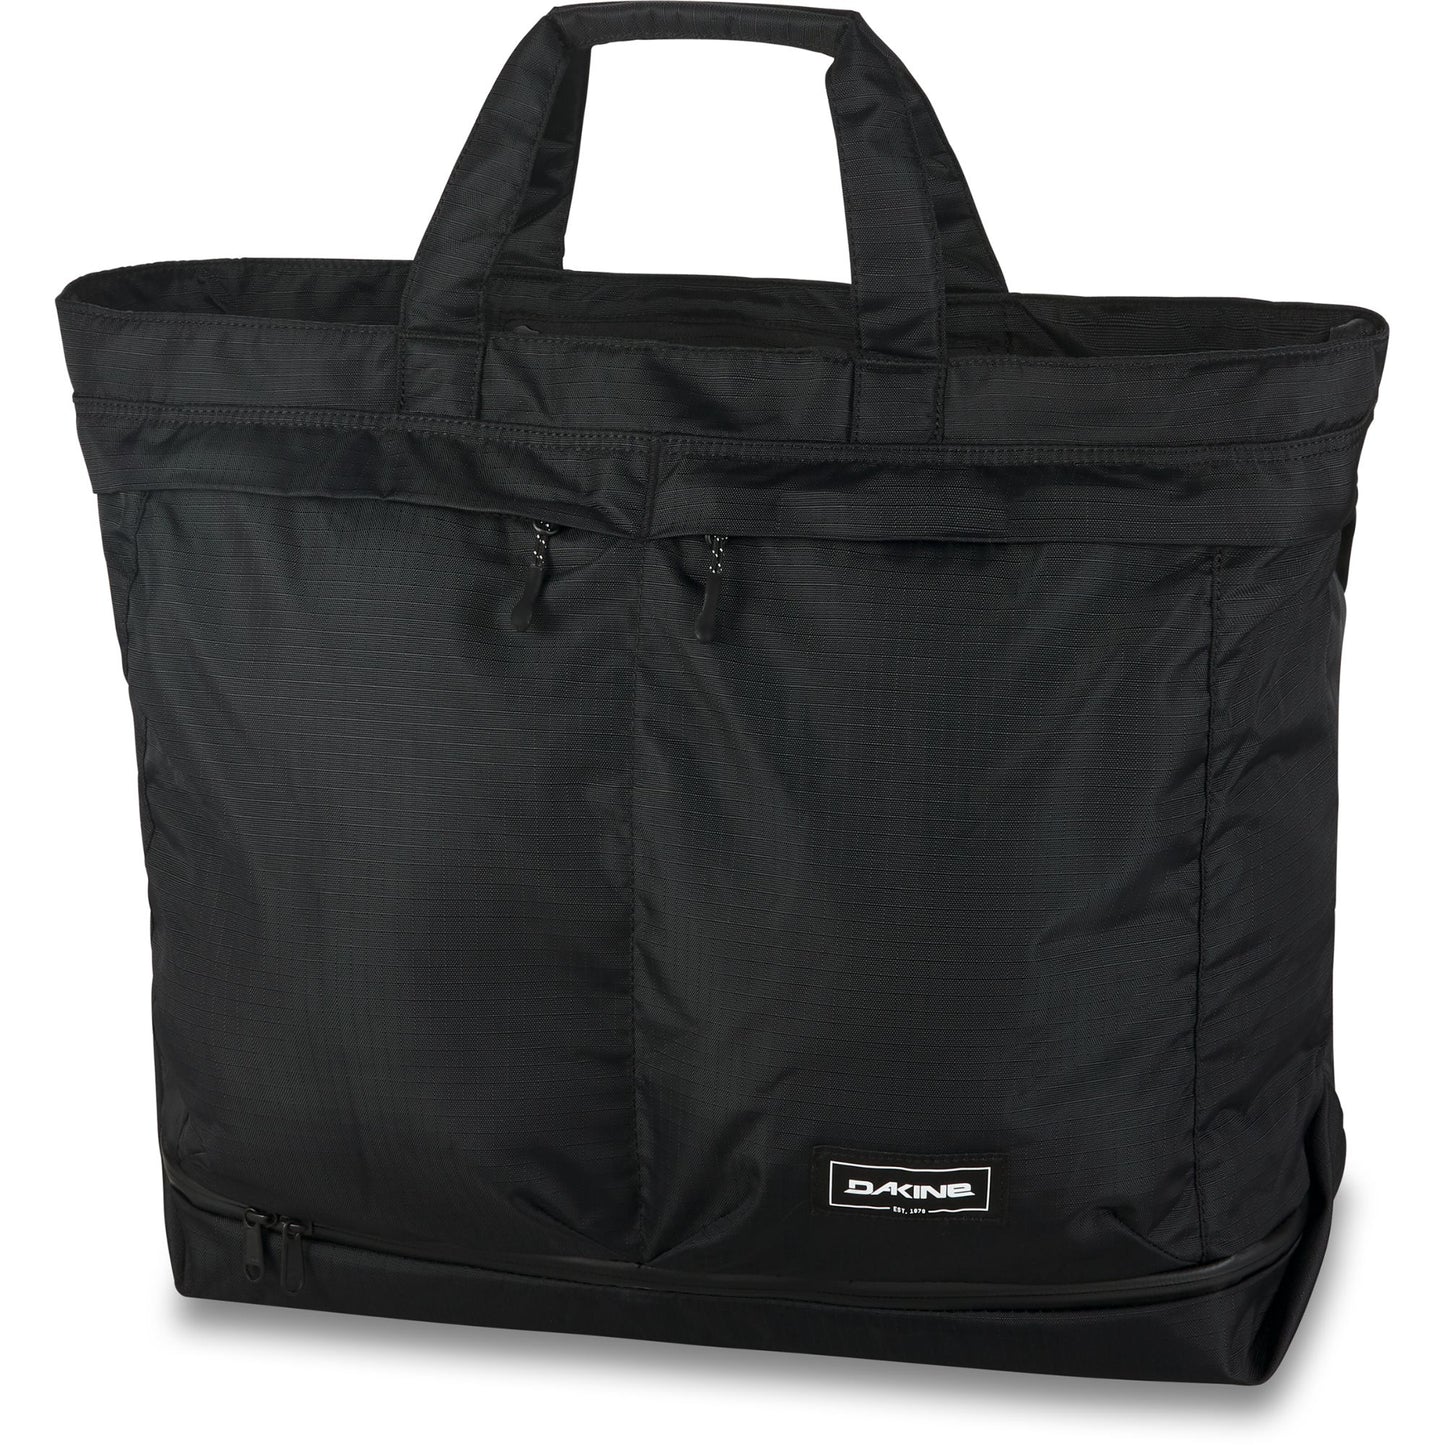 Dakine Verge Weekender Tote 34L Black Ripstop OS Travel Bags